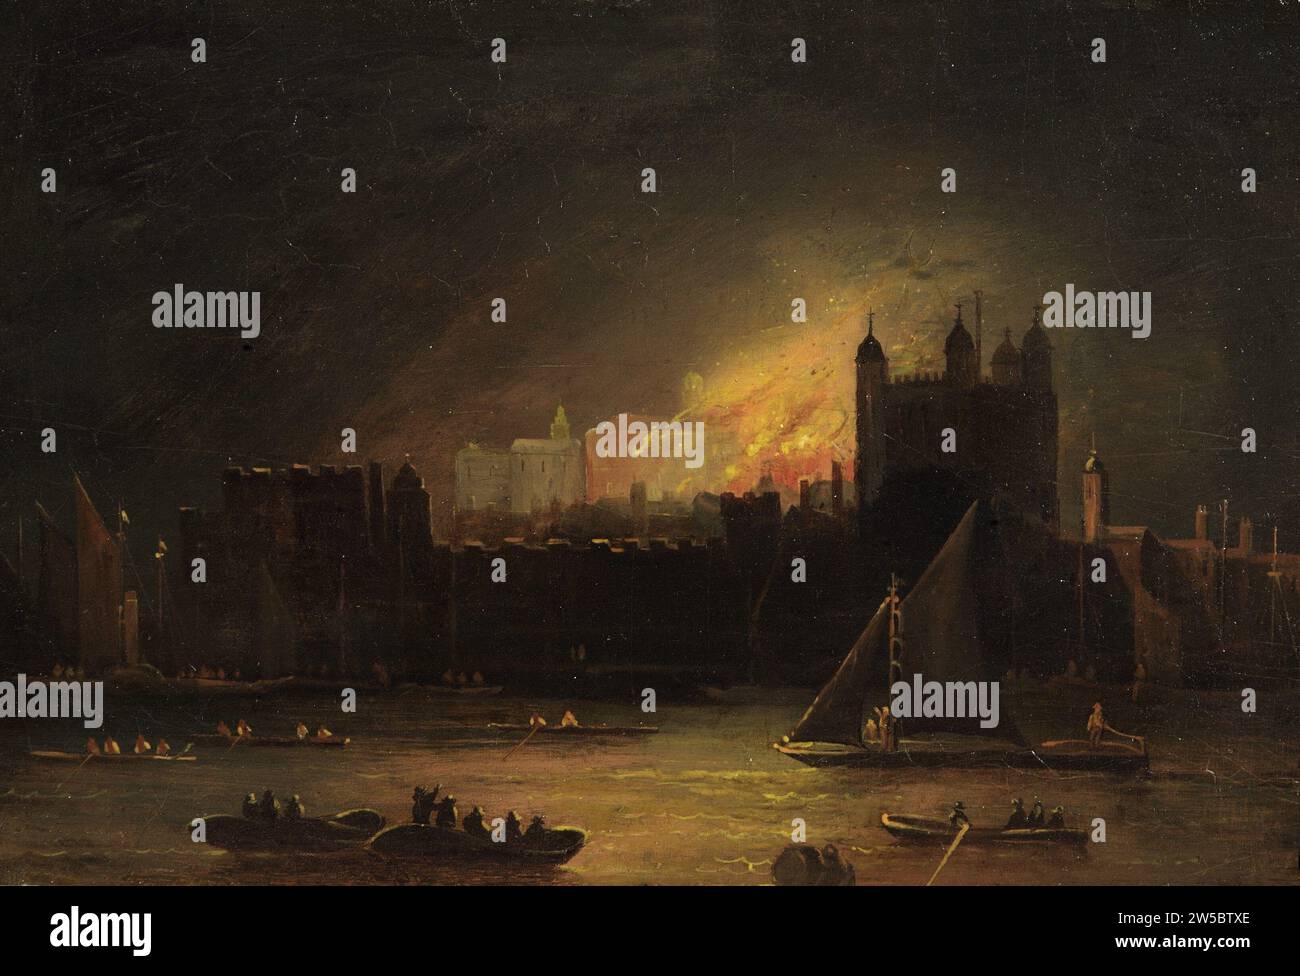 Peinture à l'huile sur panneau de l'incendie de 1841 dans la Tour de Londres, de la rive sud de la Tamise, milieu du XIXe siècle, Grande-Bretagne Banque D'Images